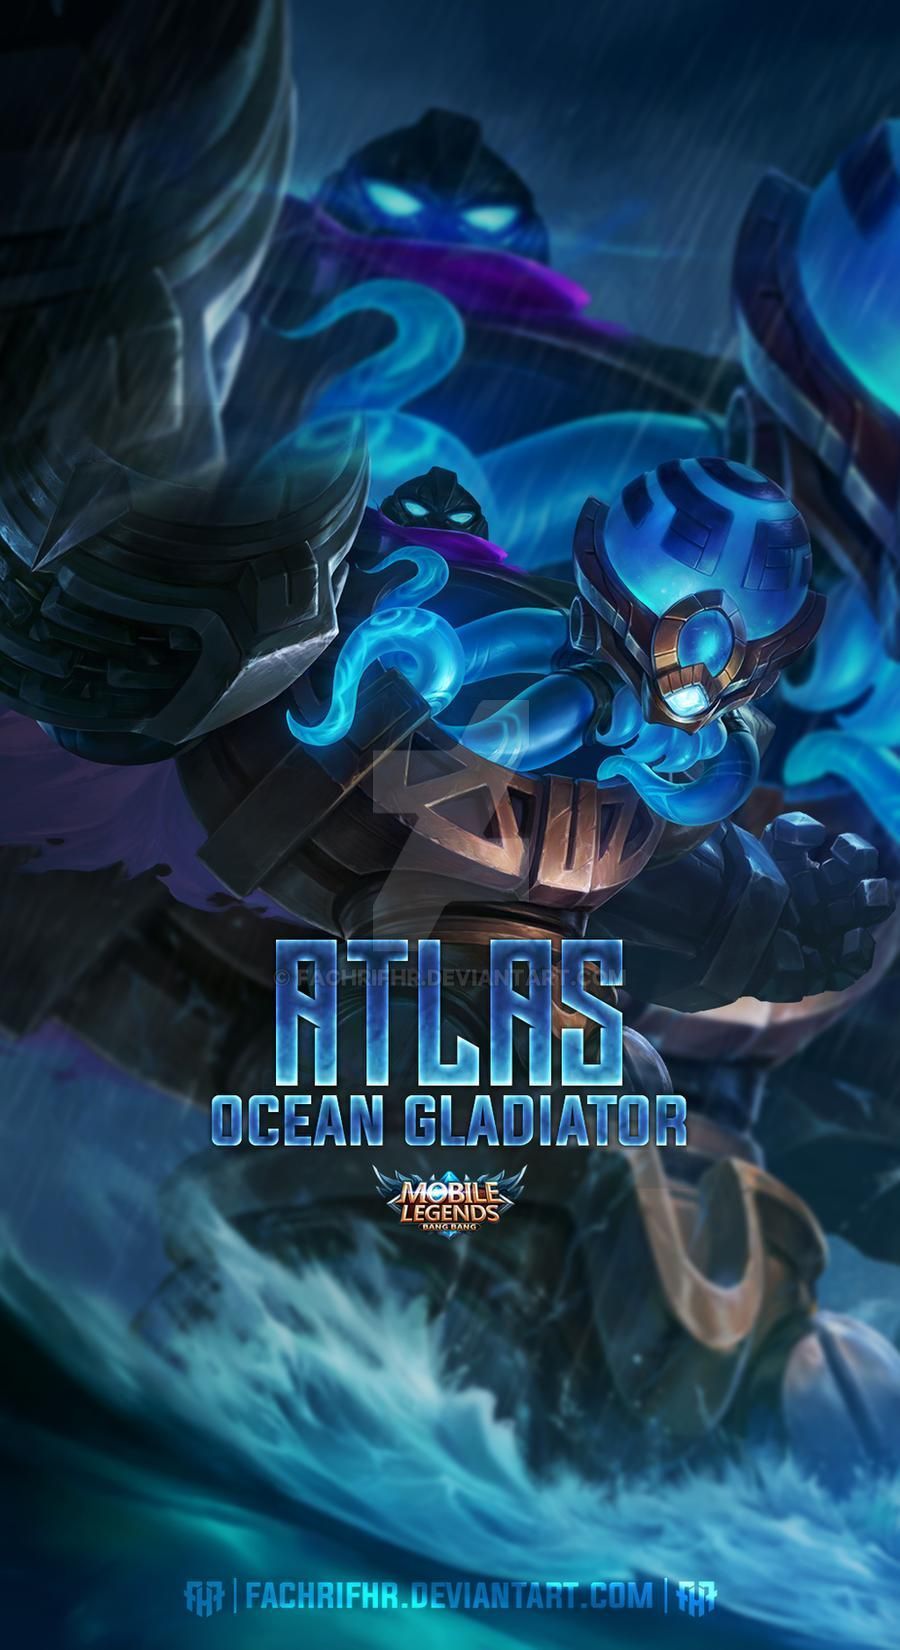 Atlas Ocean Gladiator. Mobile legend wallpaper, Mobile legends, Hunter anime